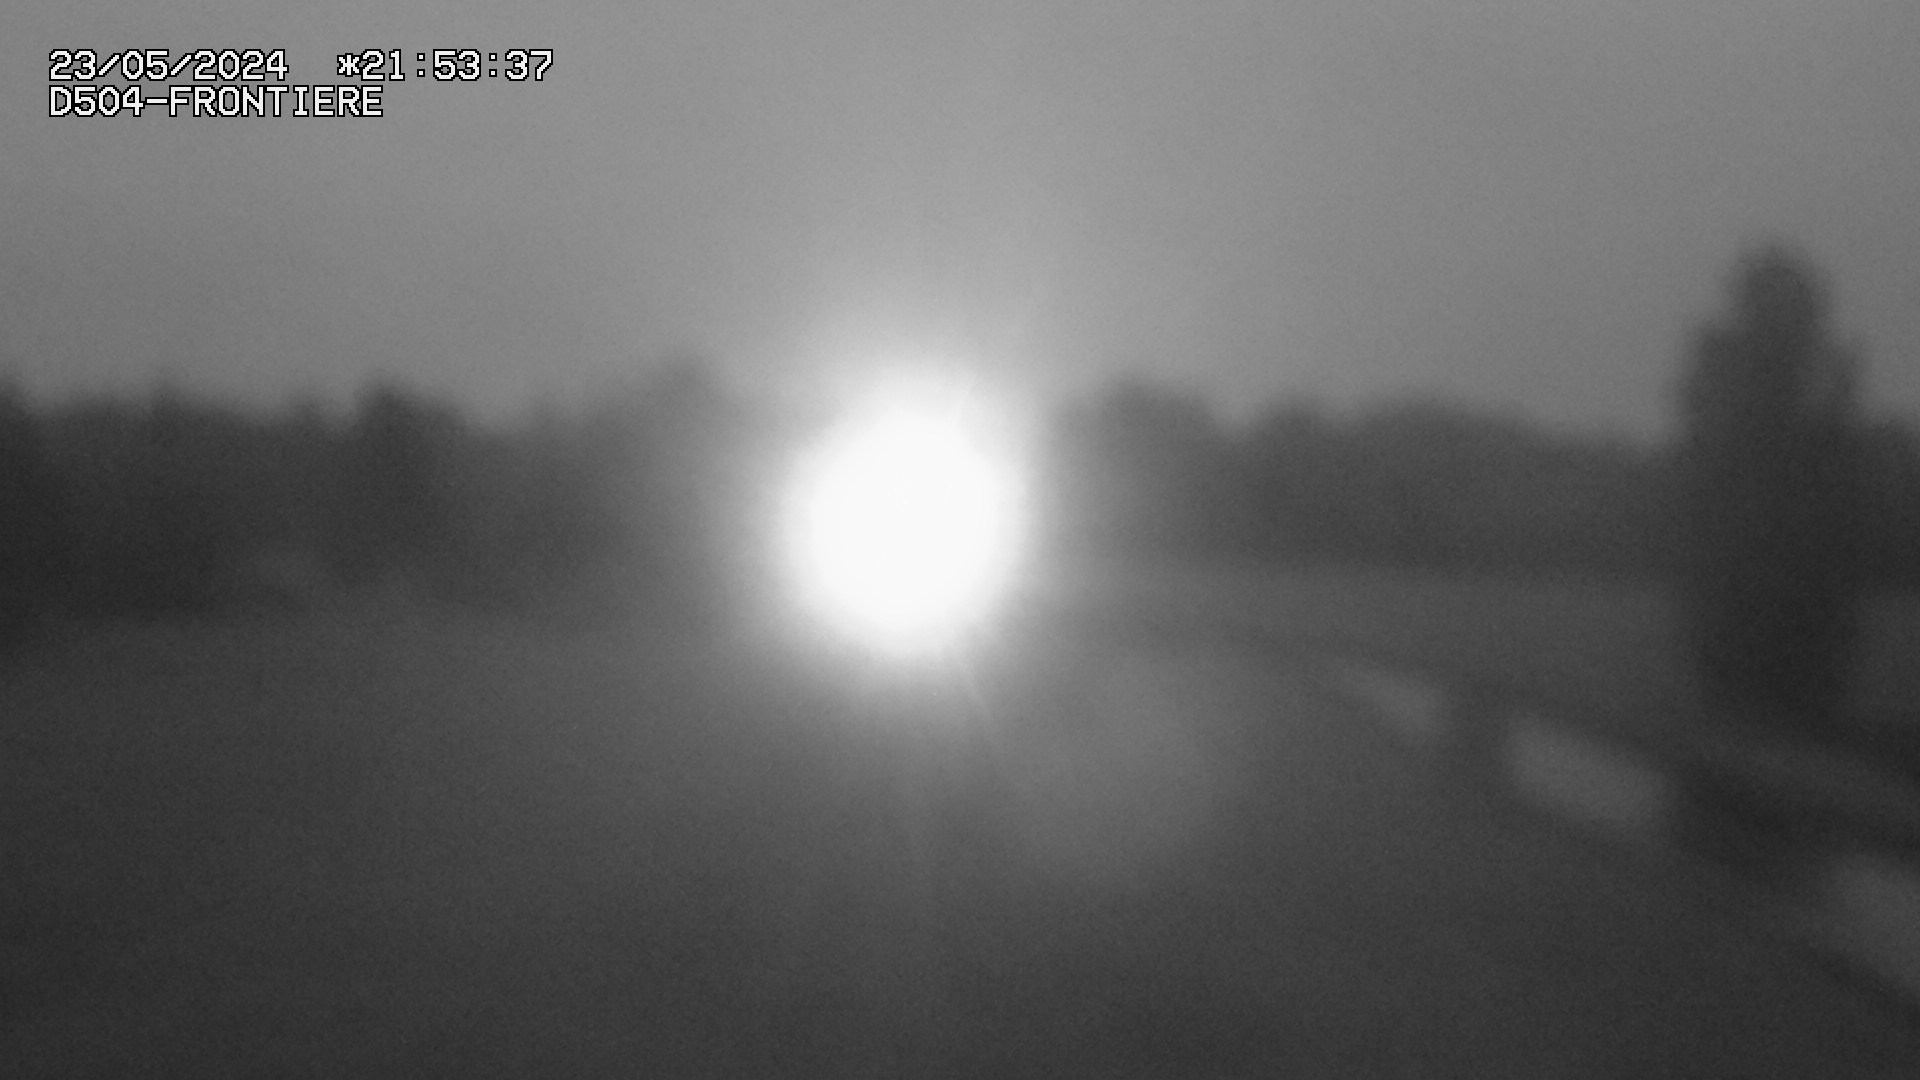 <h2>Webcam routière à Roppenheim sur la D4. La voie en sens inverse se dirige vers la frontière allemande</h2>